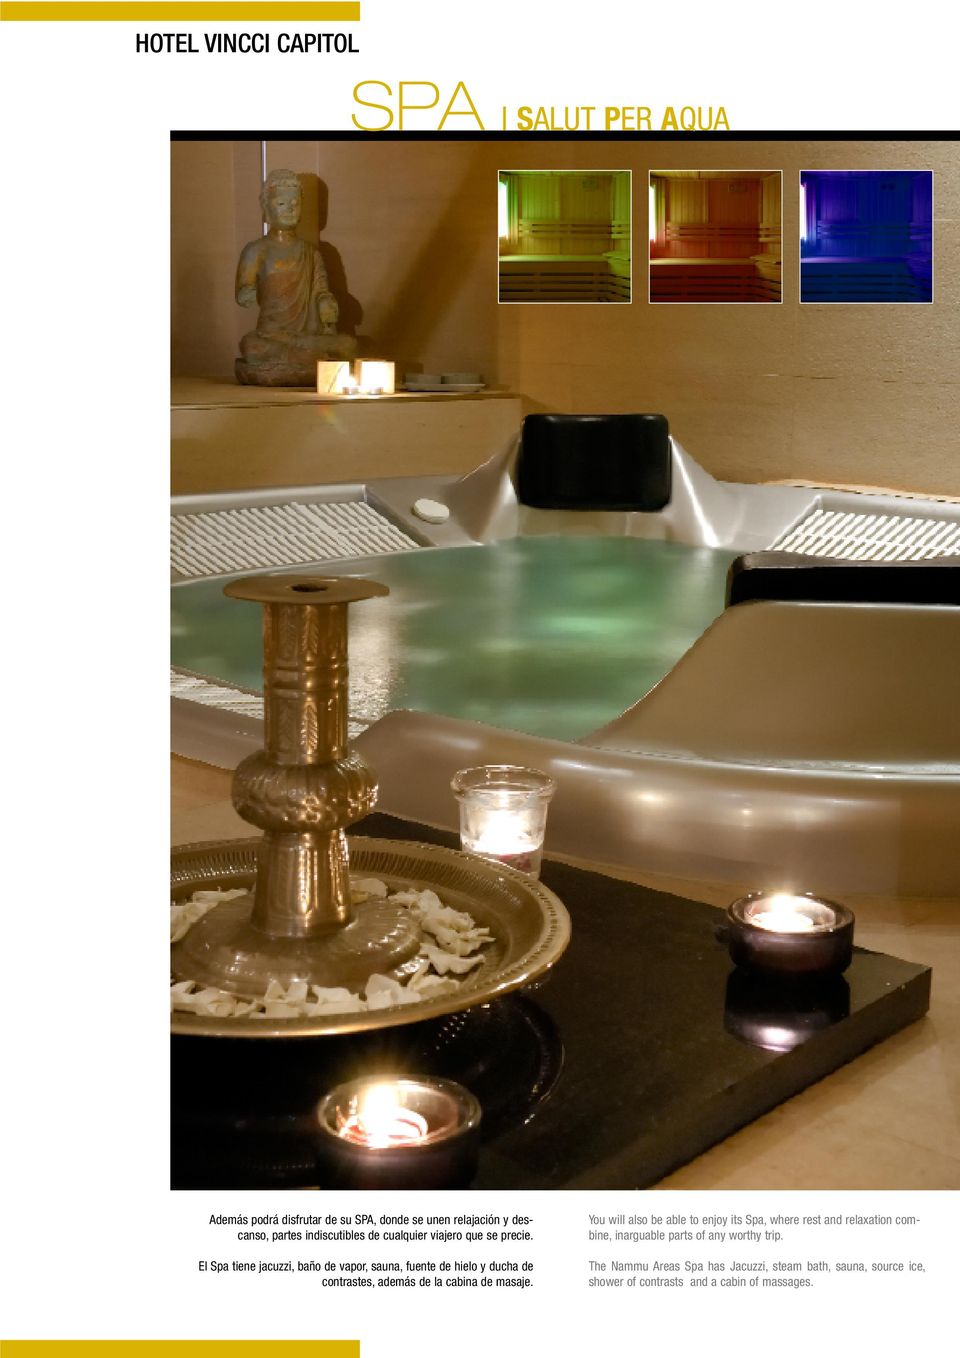 El Spa tiene jacuzzi, baño de vapor, sauna, fuente de hielo y ducha de contrastes, además de la cabina de masaje.